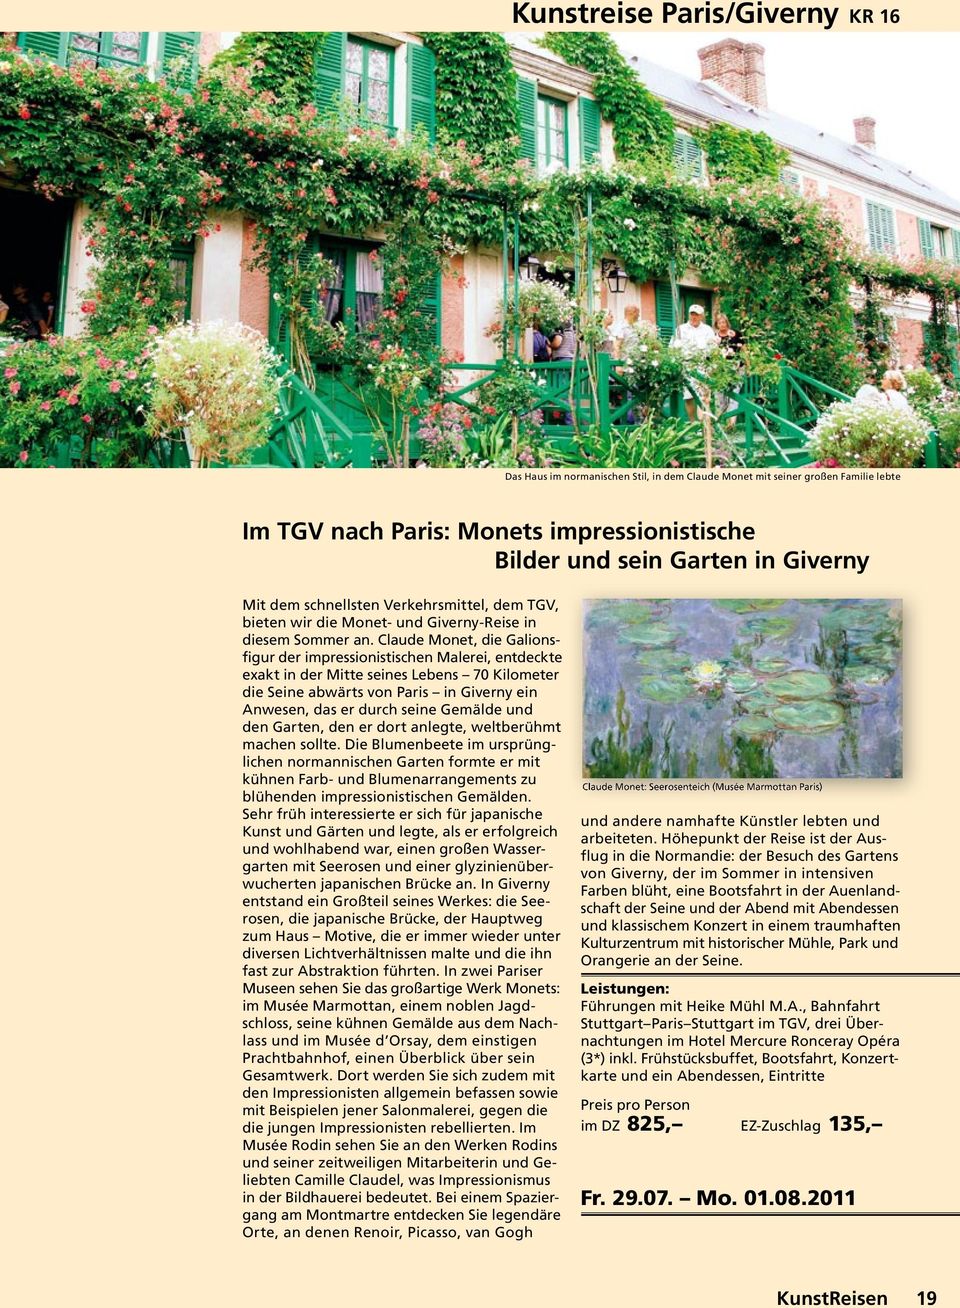 Claude Monet, die Galionsfigur der impressionistischen Malerei, entdeckte exakt in der Mitte seines Lebens 70 Kilometer die Seine abwärts von Paris in Giverny ein Anwesen, das er durch seine Gemälde